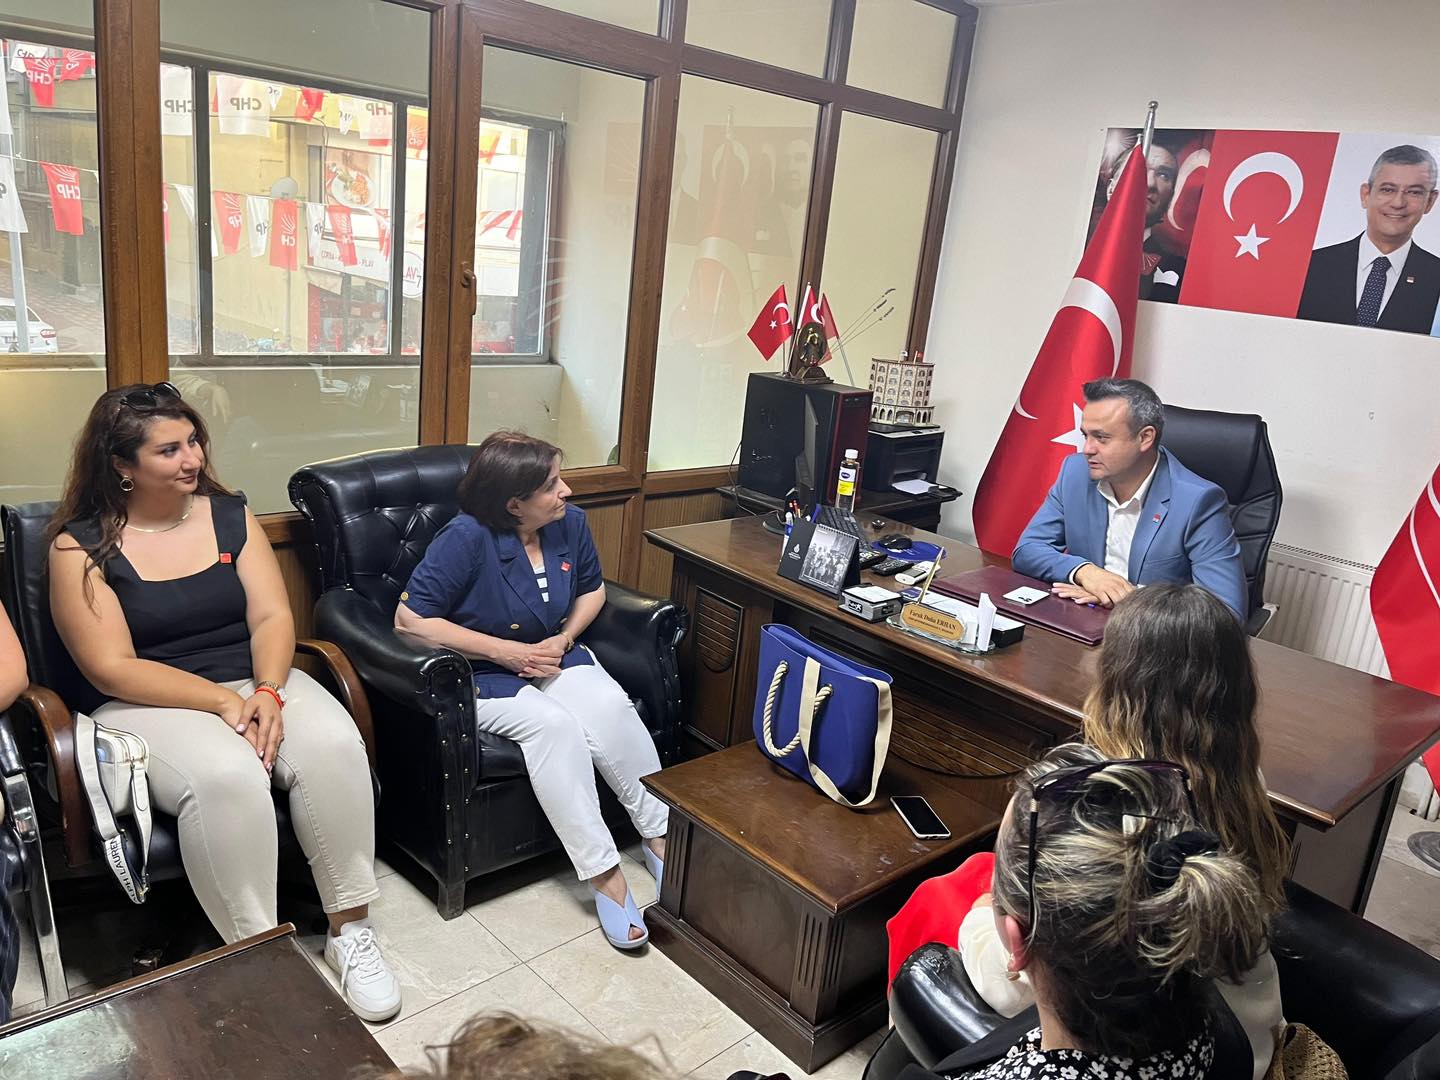 Abay, CHP Afyonkarahisar İl Başkanı Erhan’ı ziyaret etti!